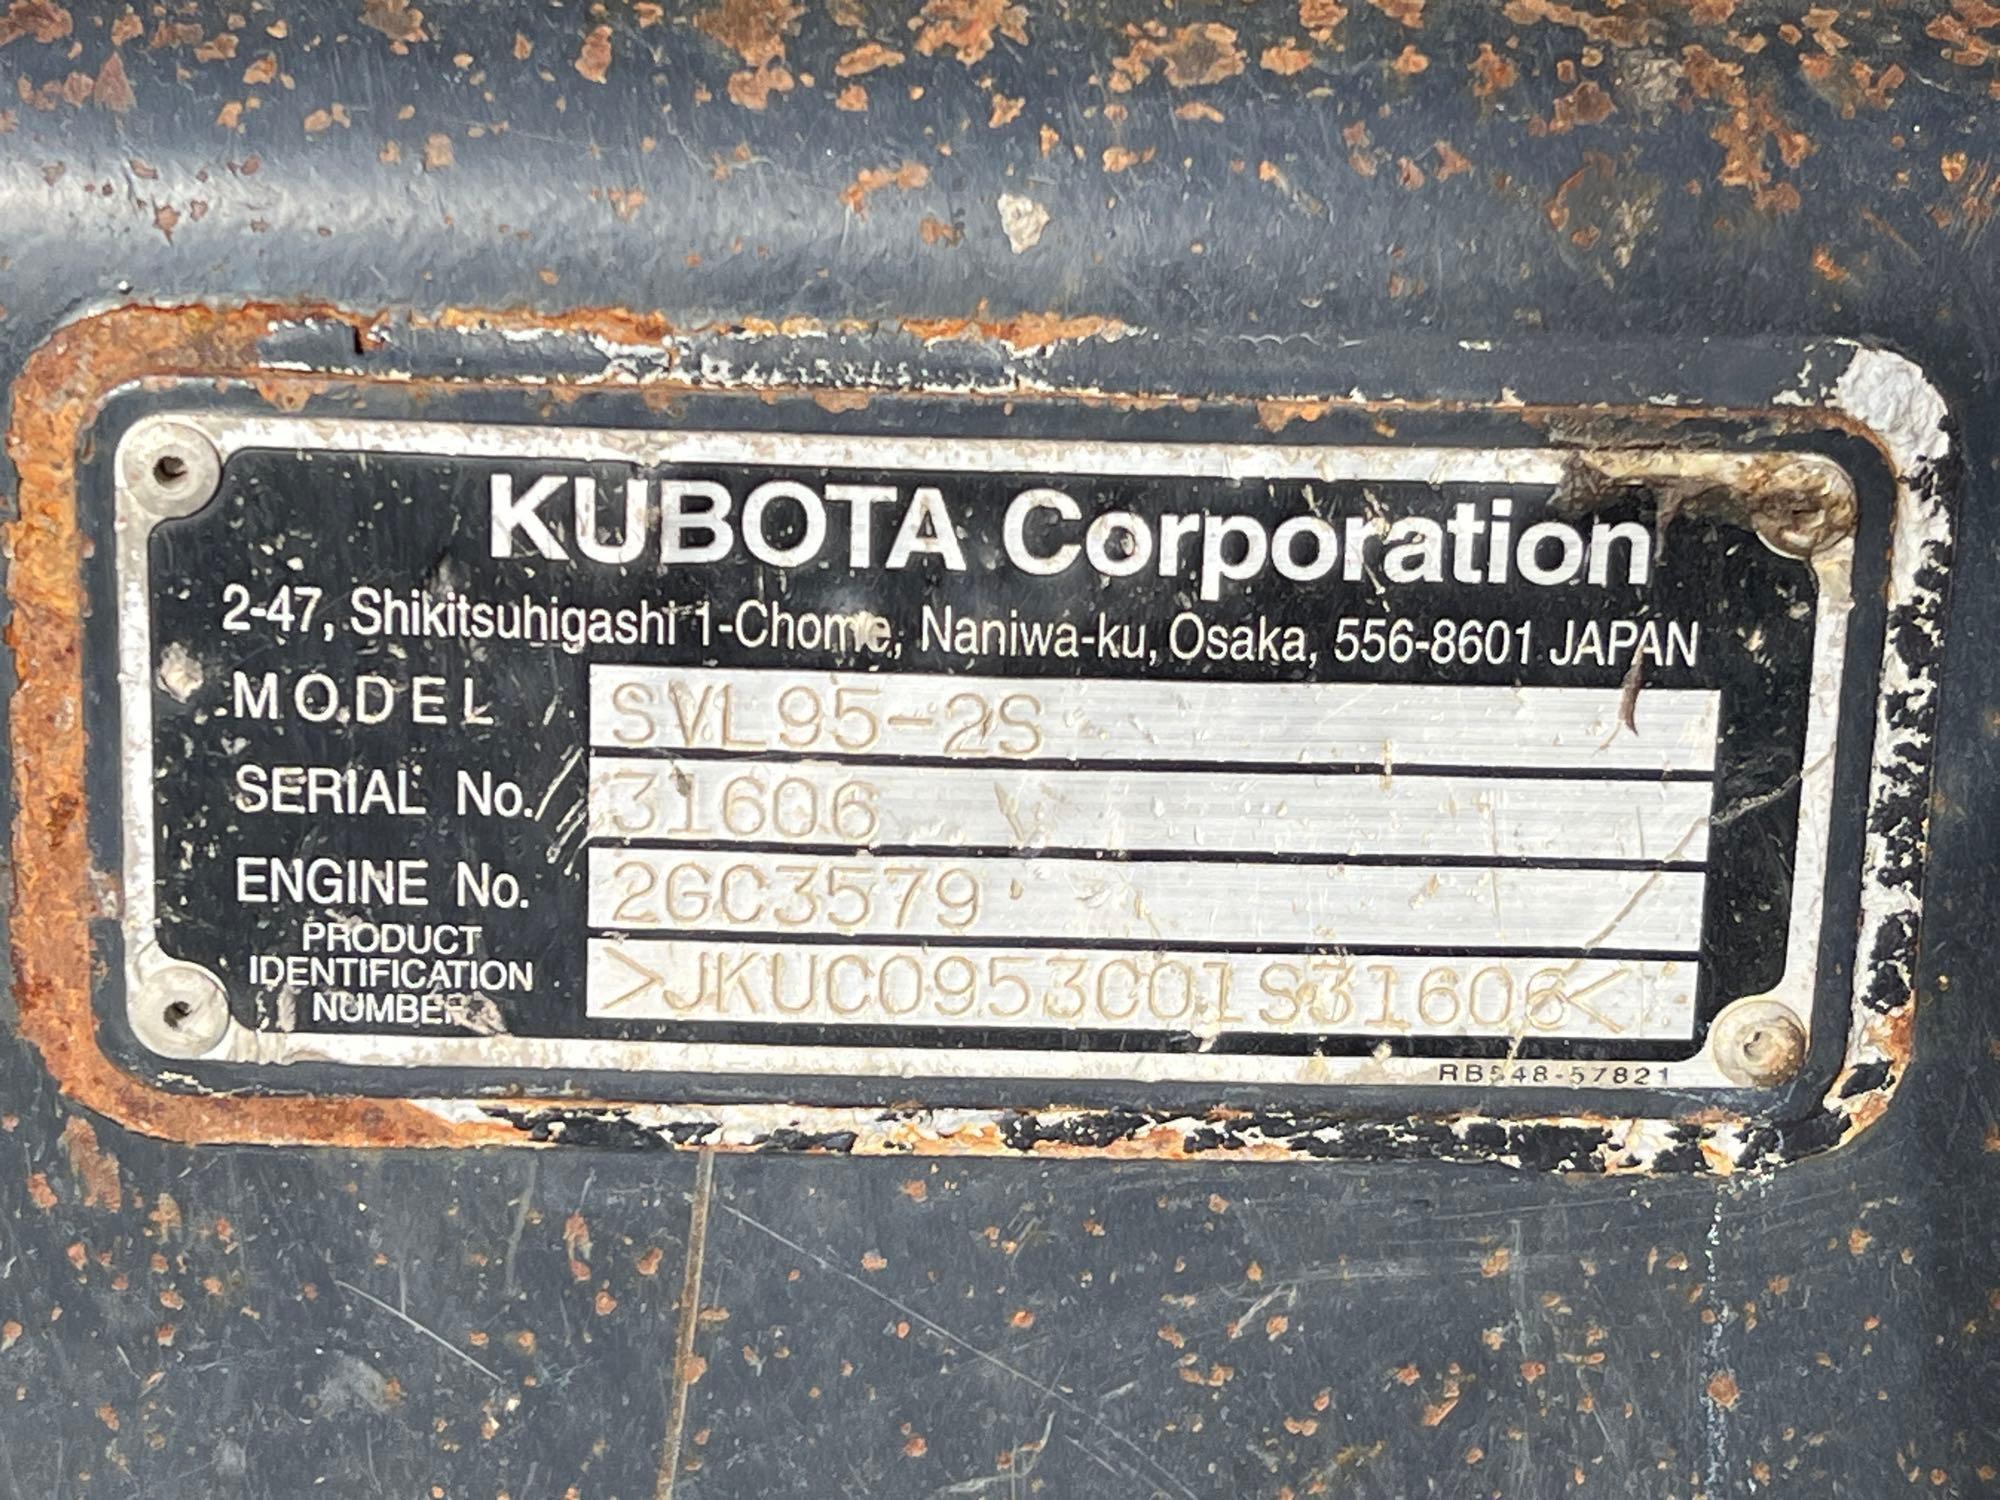 2016 KUBOTA SVL95-2SHFC RUBBER TRACKED SKID STEER SN:JKUC0953C01S31606 powered by Kubota diesel